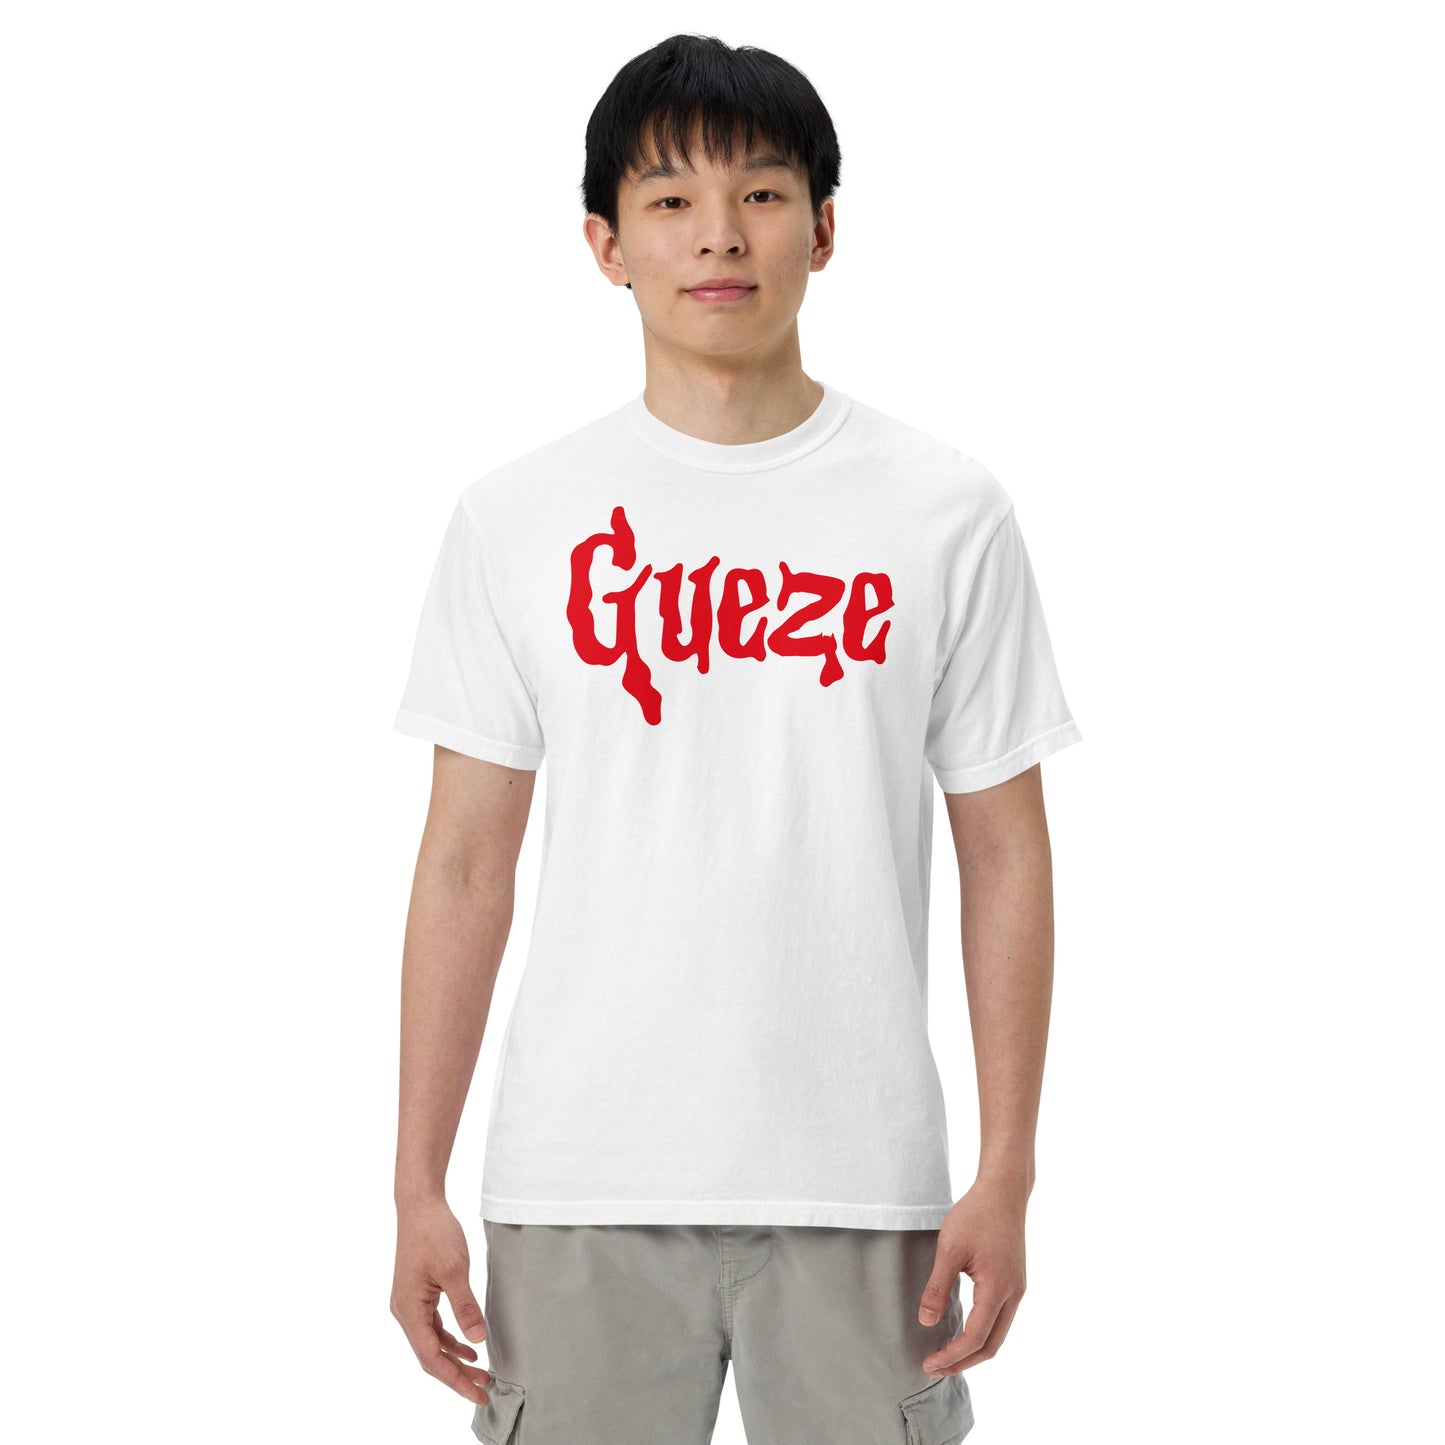 Gueze Blood red heavyweight t-shirt Unisex